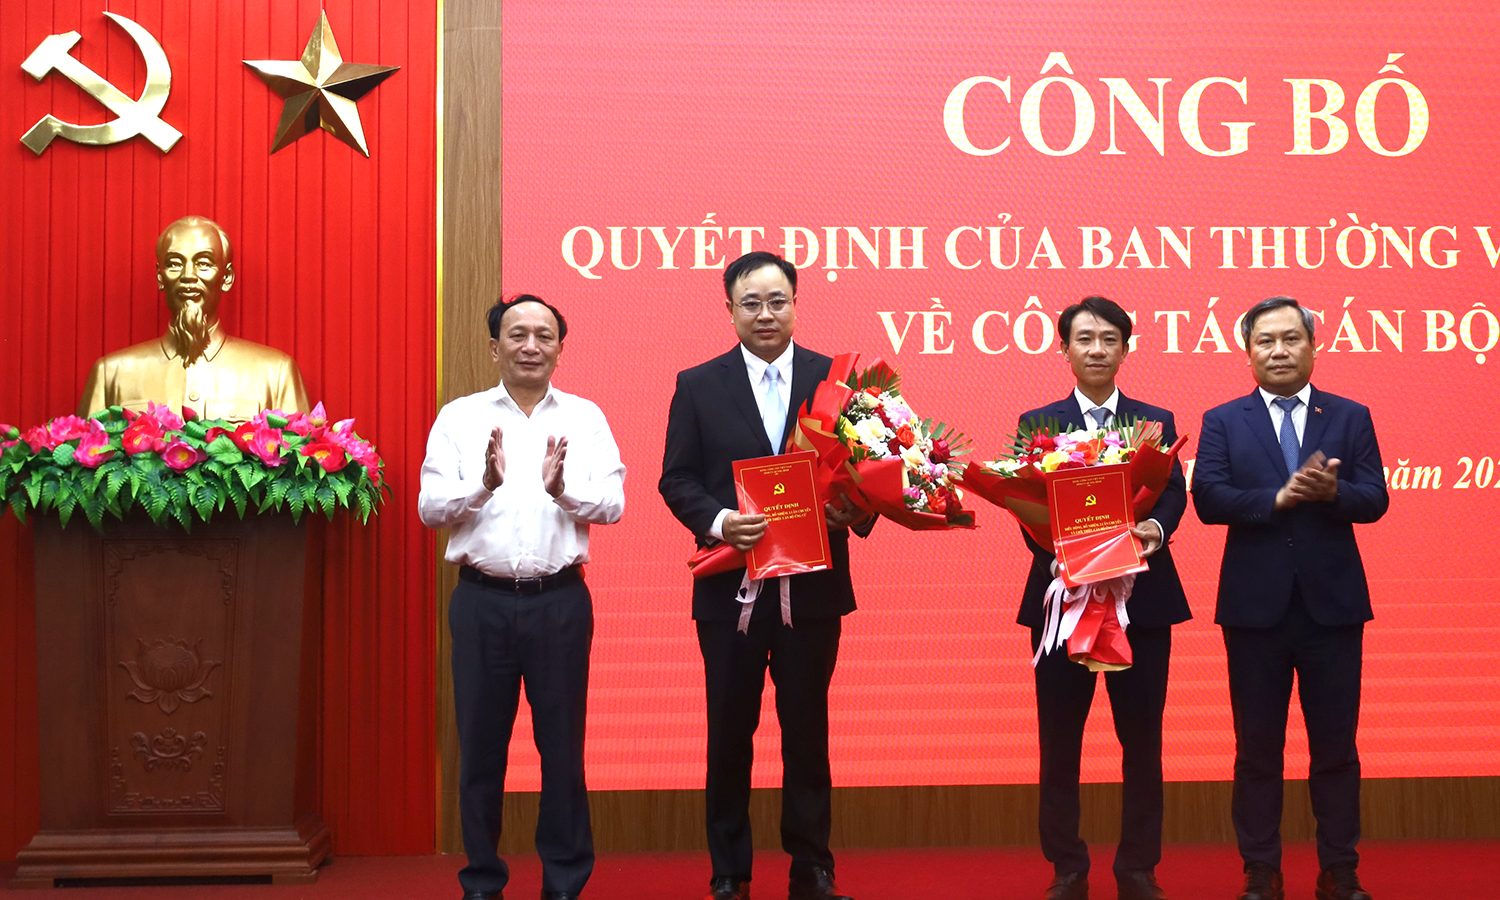 Đồng chí Bí thư Tỉnh ủy Vũ Đại Thắng và đồng chí Phó Bí thư Thường trực Tỉnh ủy Trần Hải Châu trao quyết định và tặng hoa chúc mừng các cán bộ được bổ nhiệm.